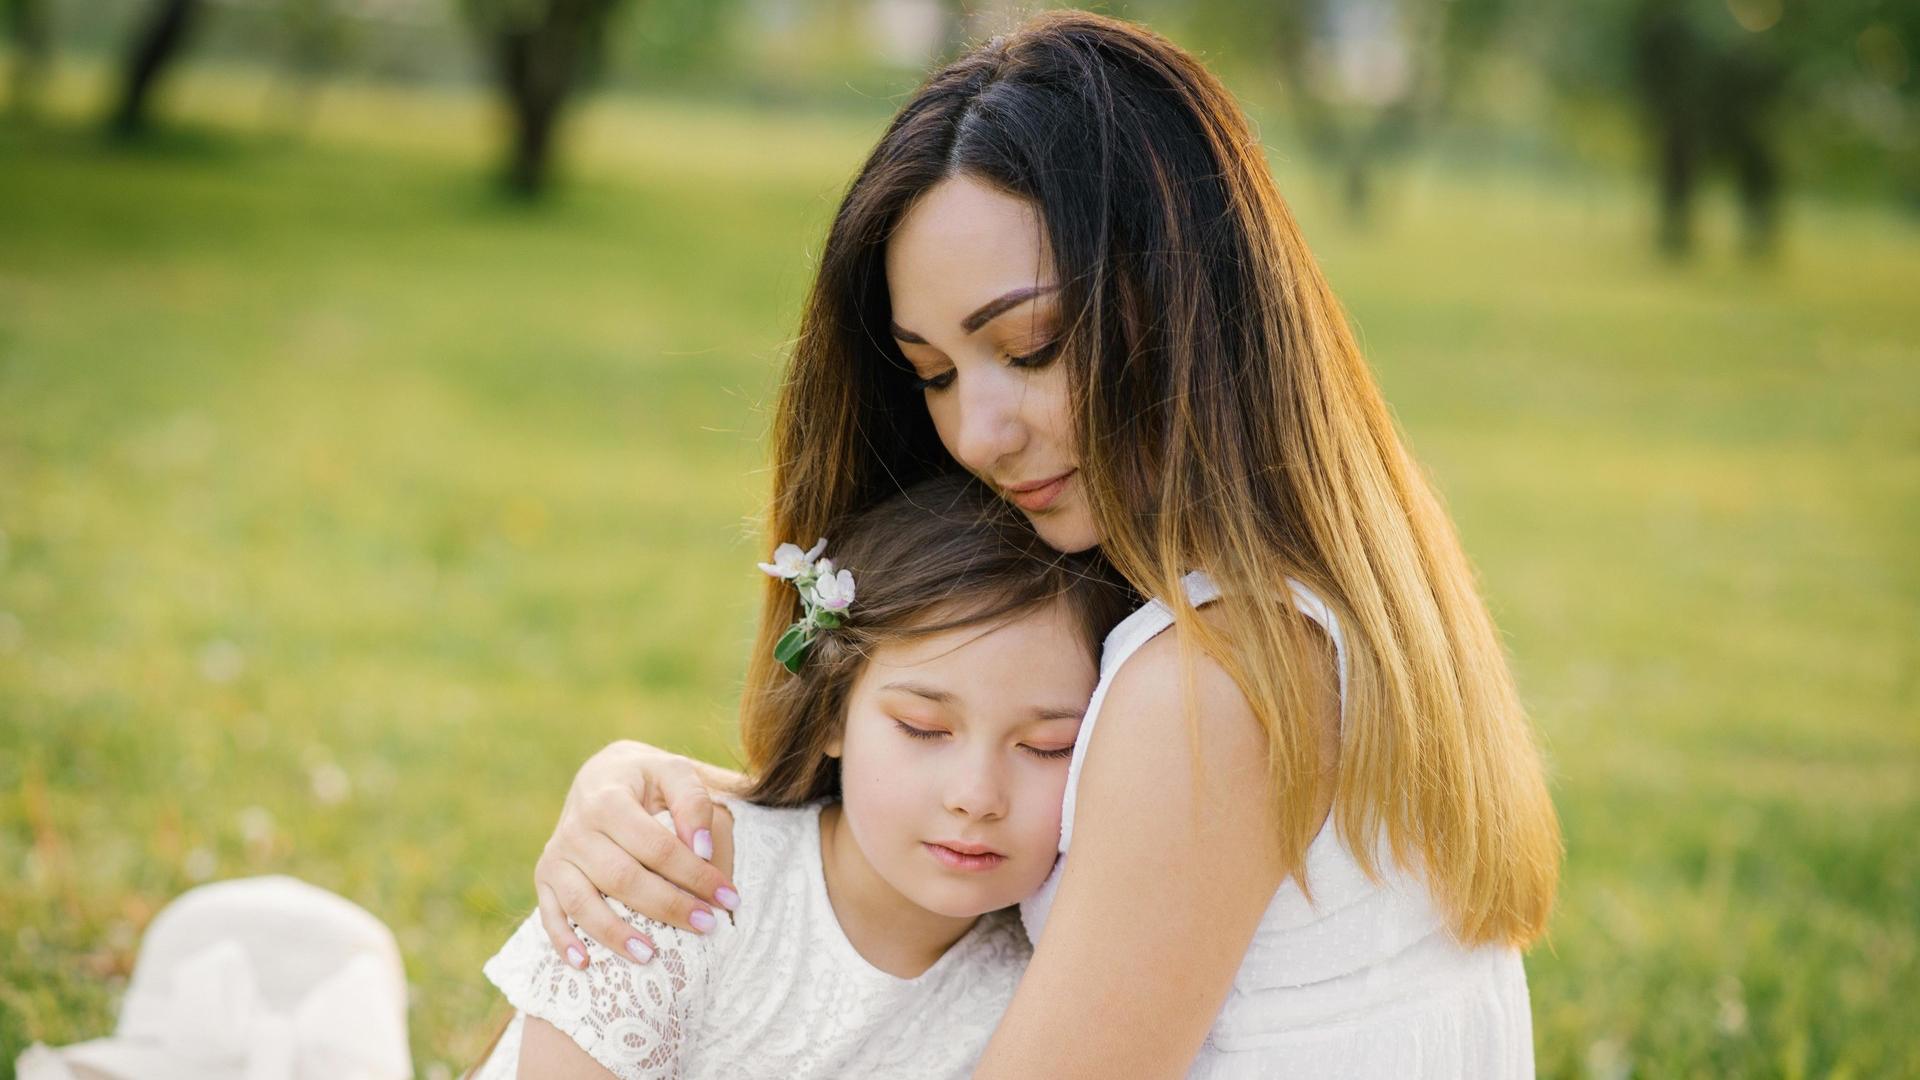 Образ матери: как он влияет на дочь? | PSYCHOLOGIES